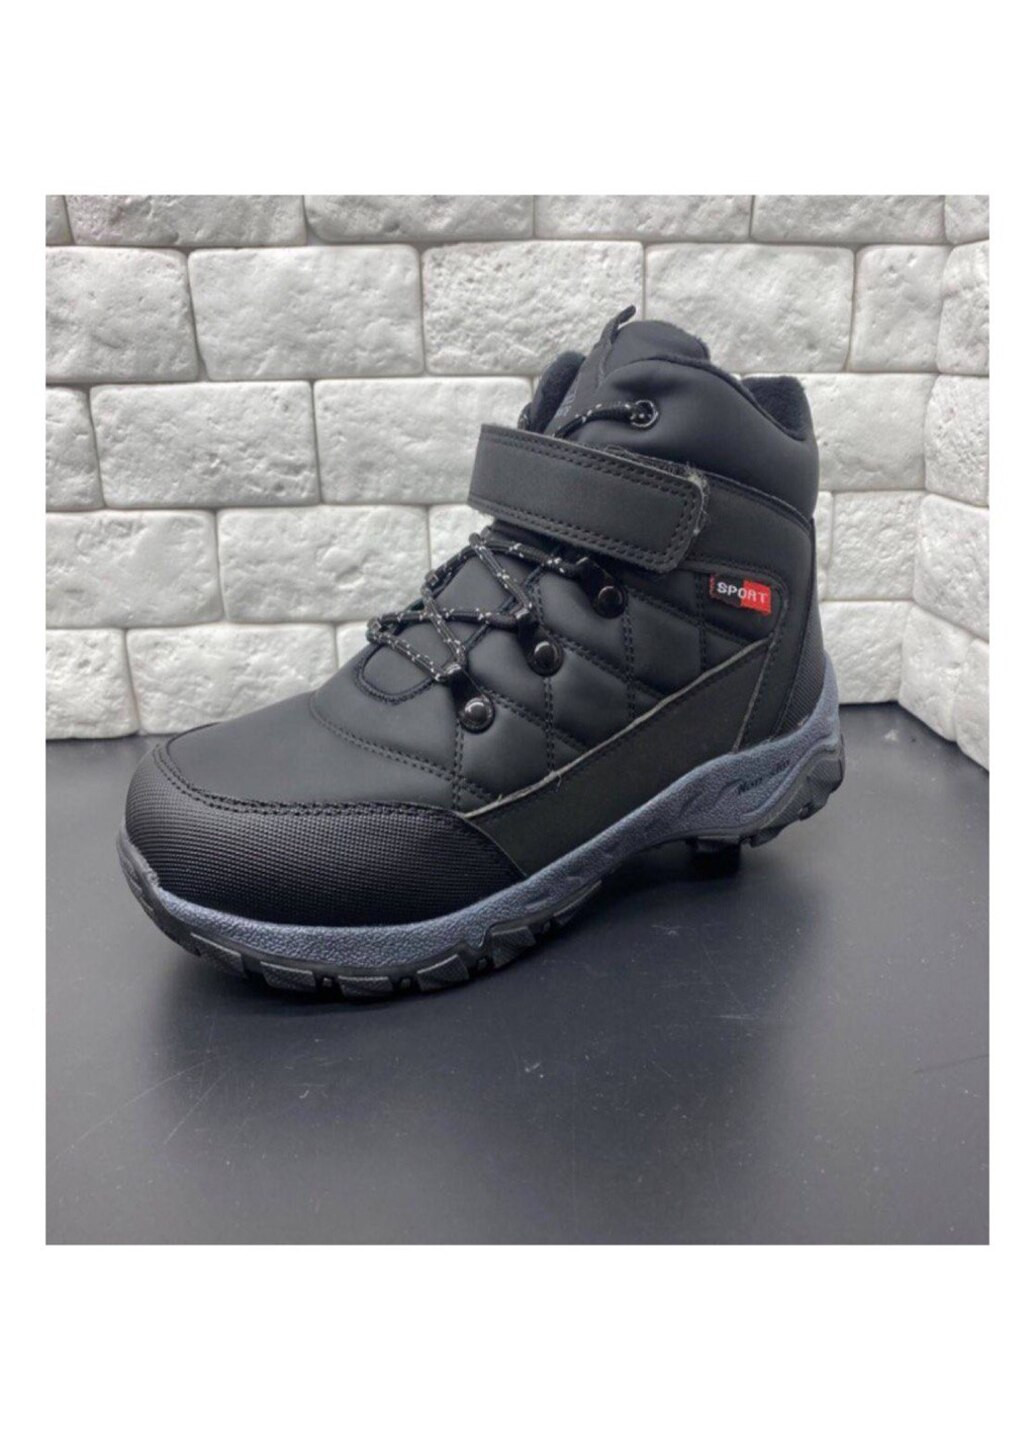 Черные зимние ботинки для мальчика зима Jong Golf